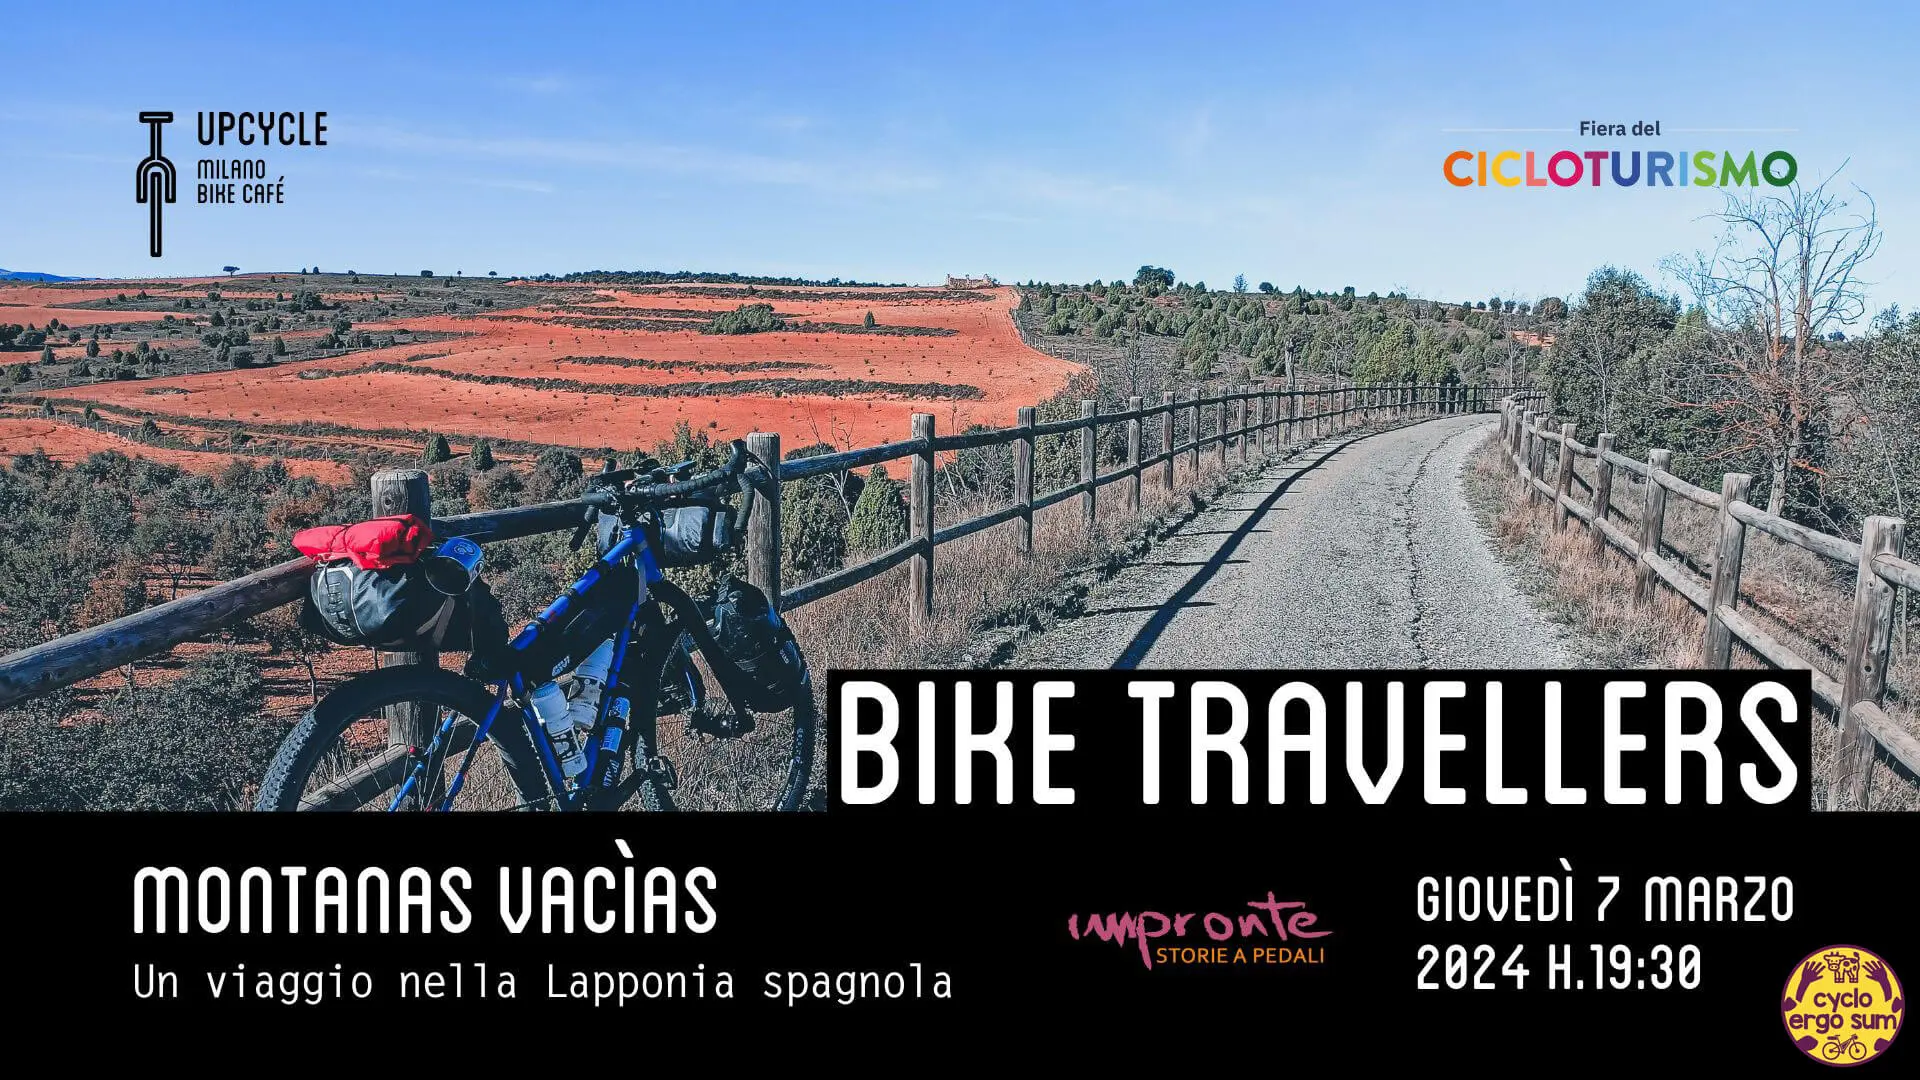 Bike Travellers | Serata Impronte da Upcycle con Girovaganzo